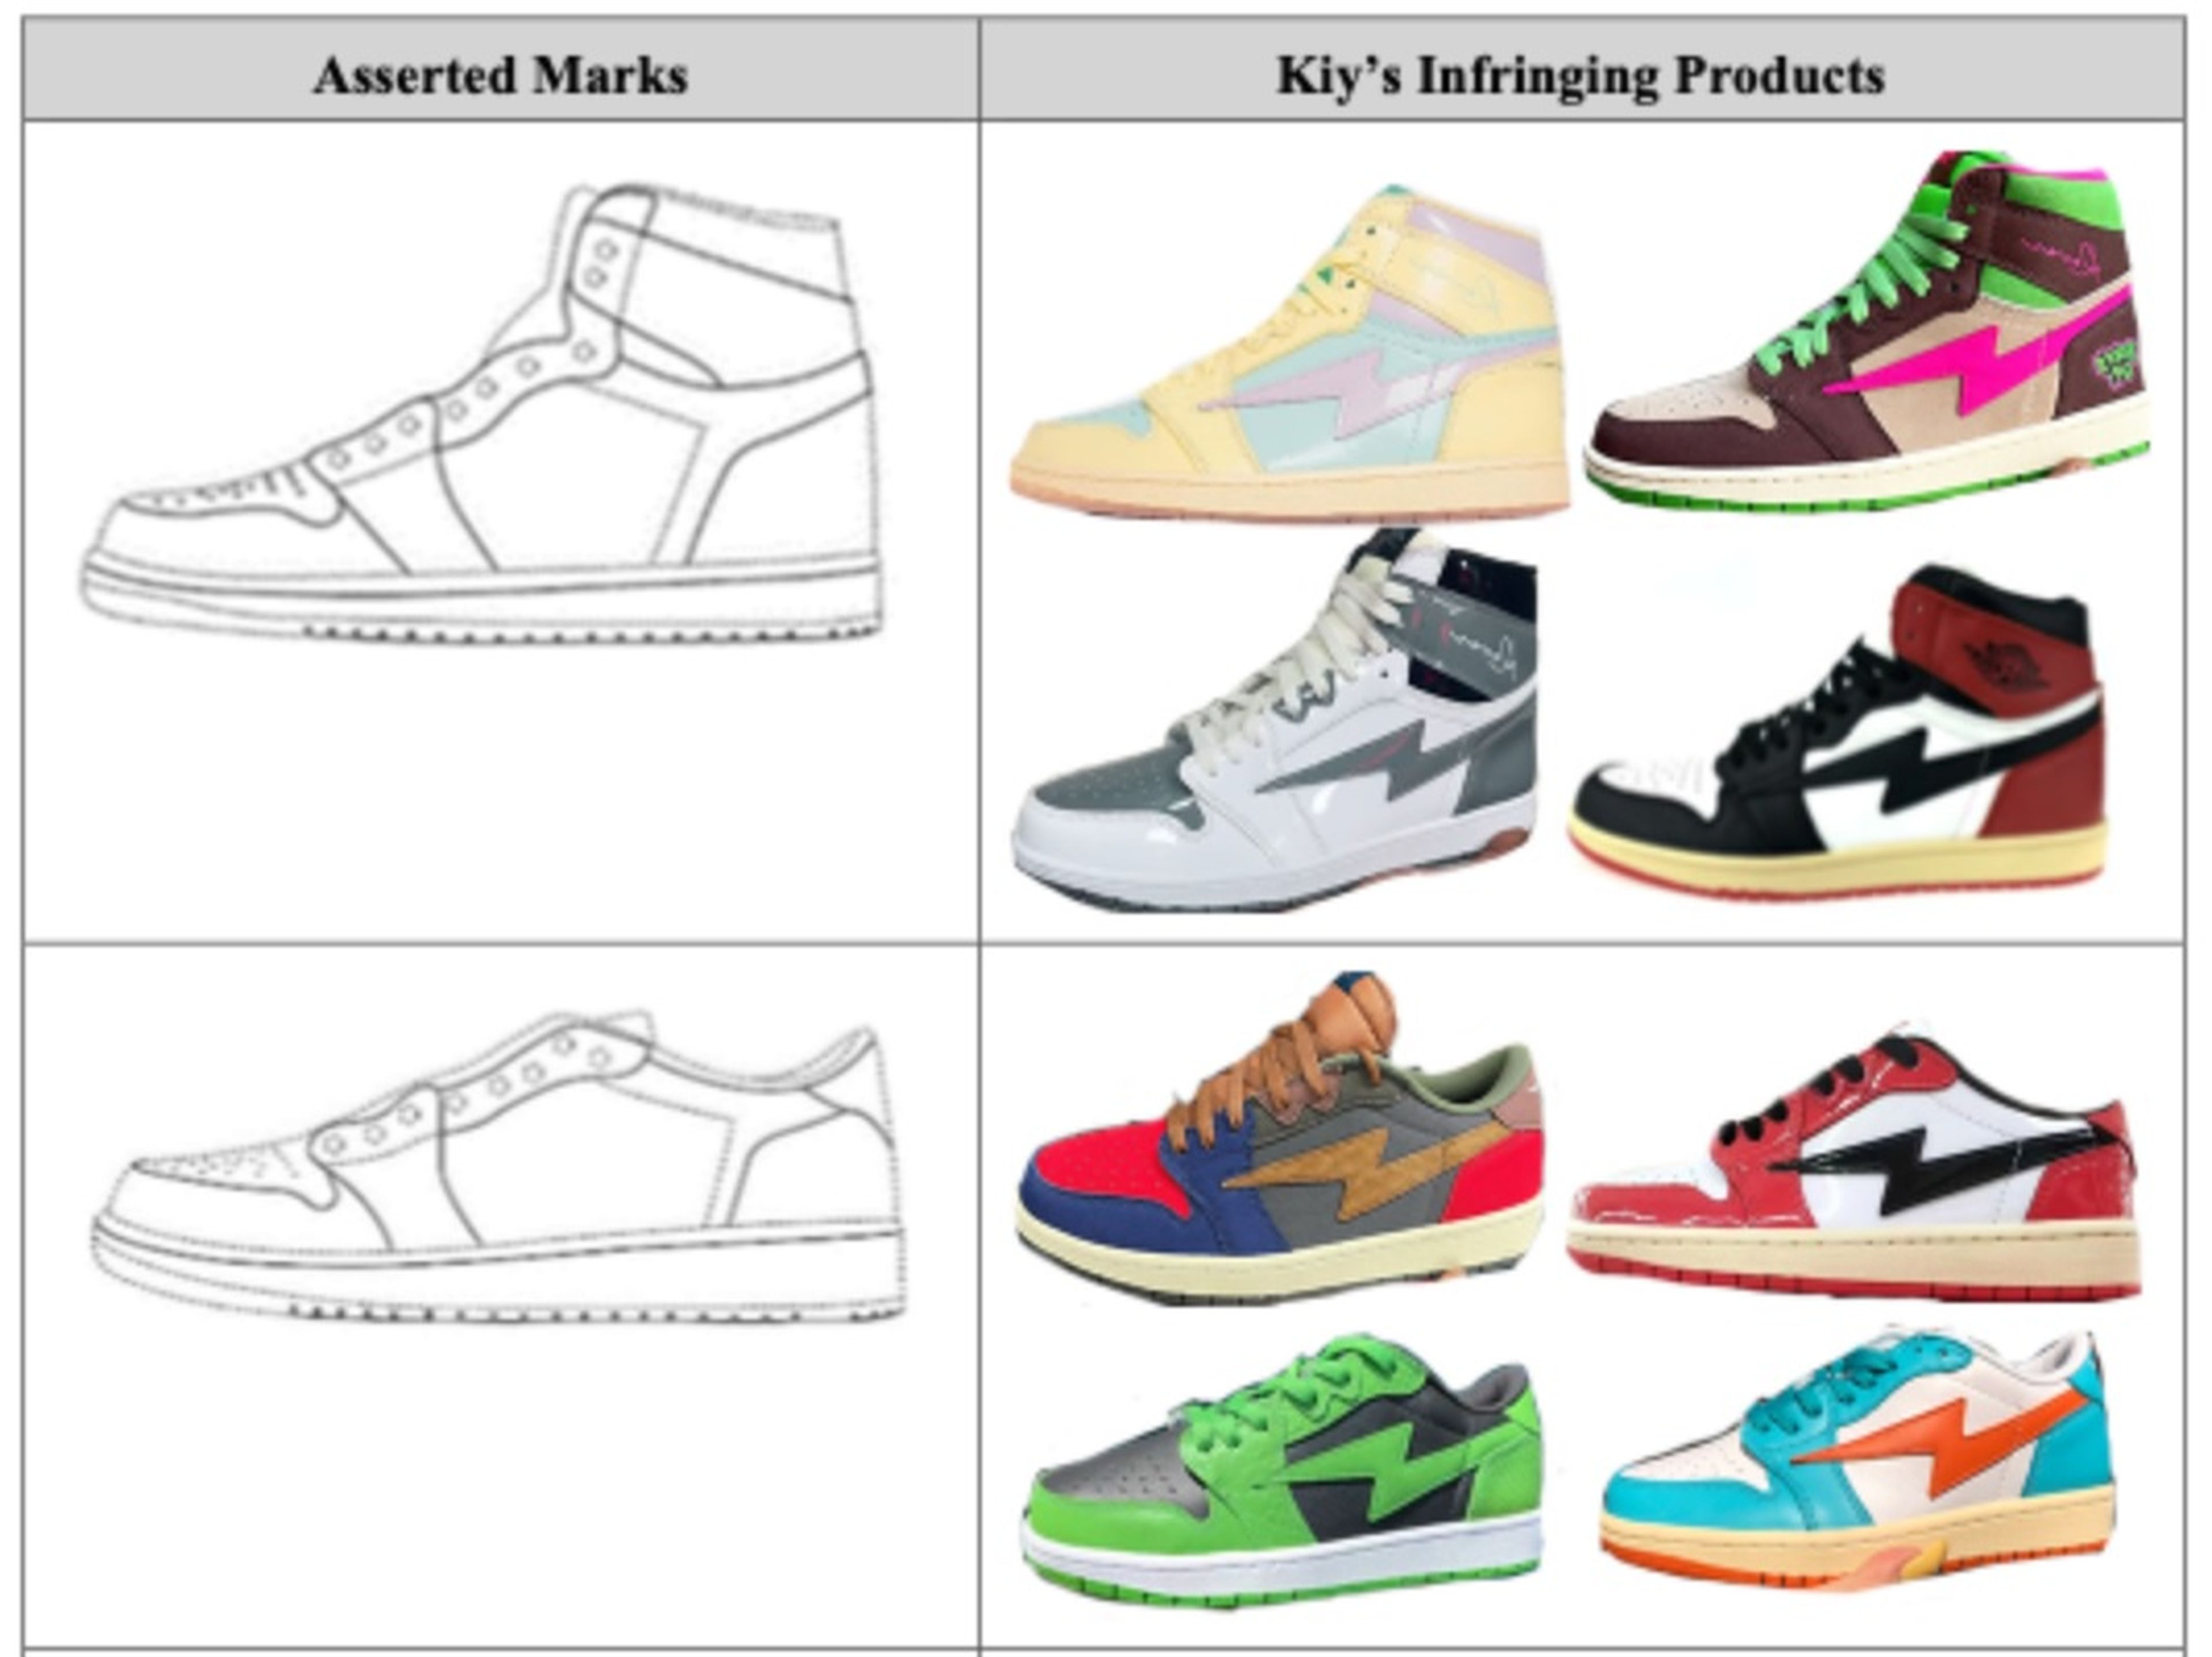 Nike alega que las zapatillas Kool Kiy han plagiado su marca.